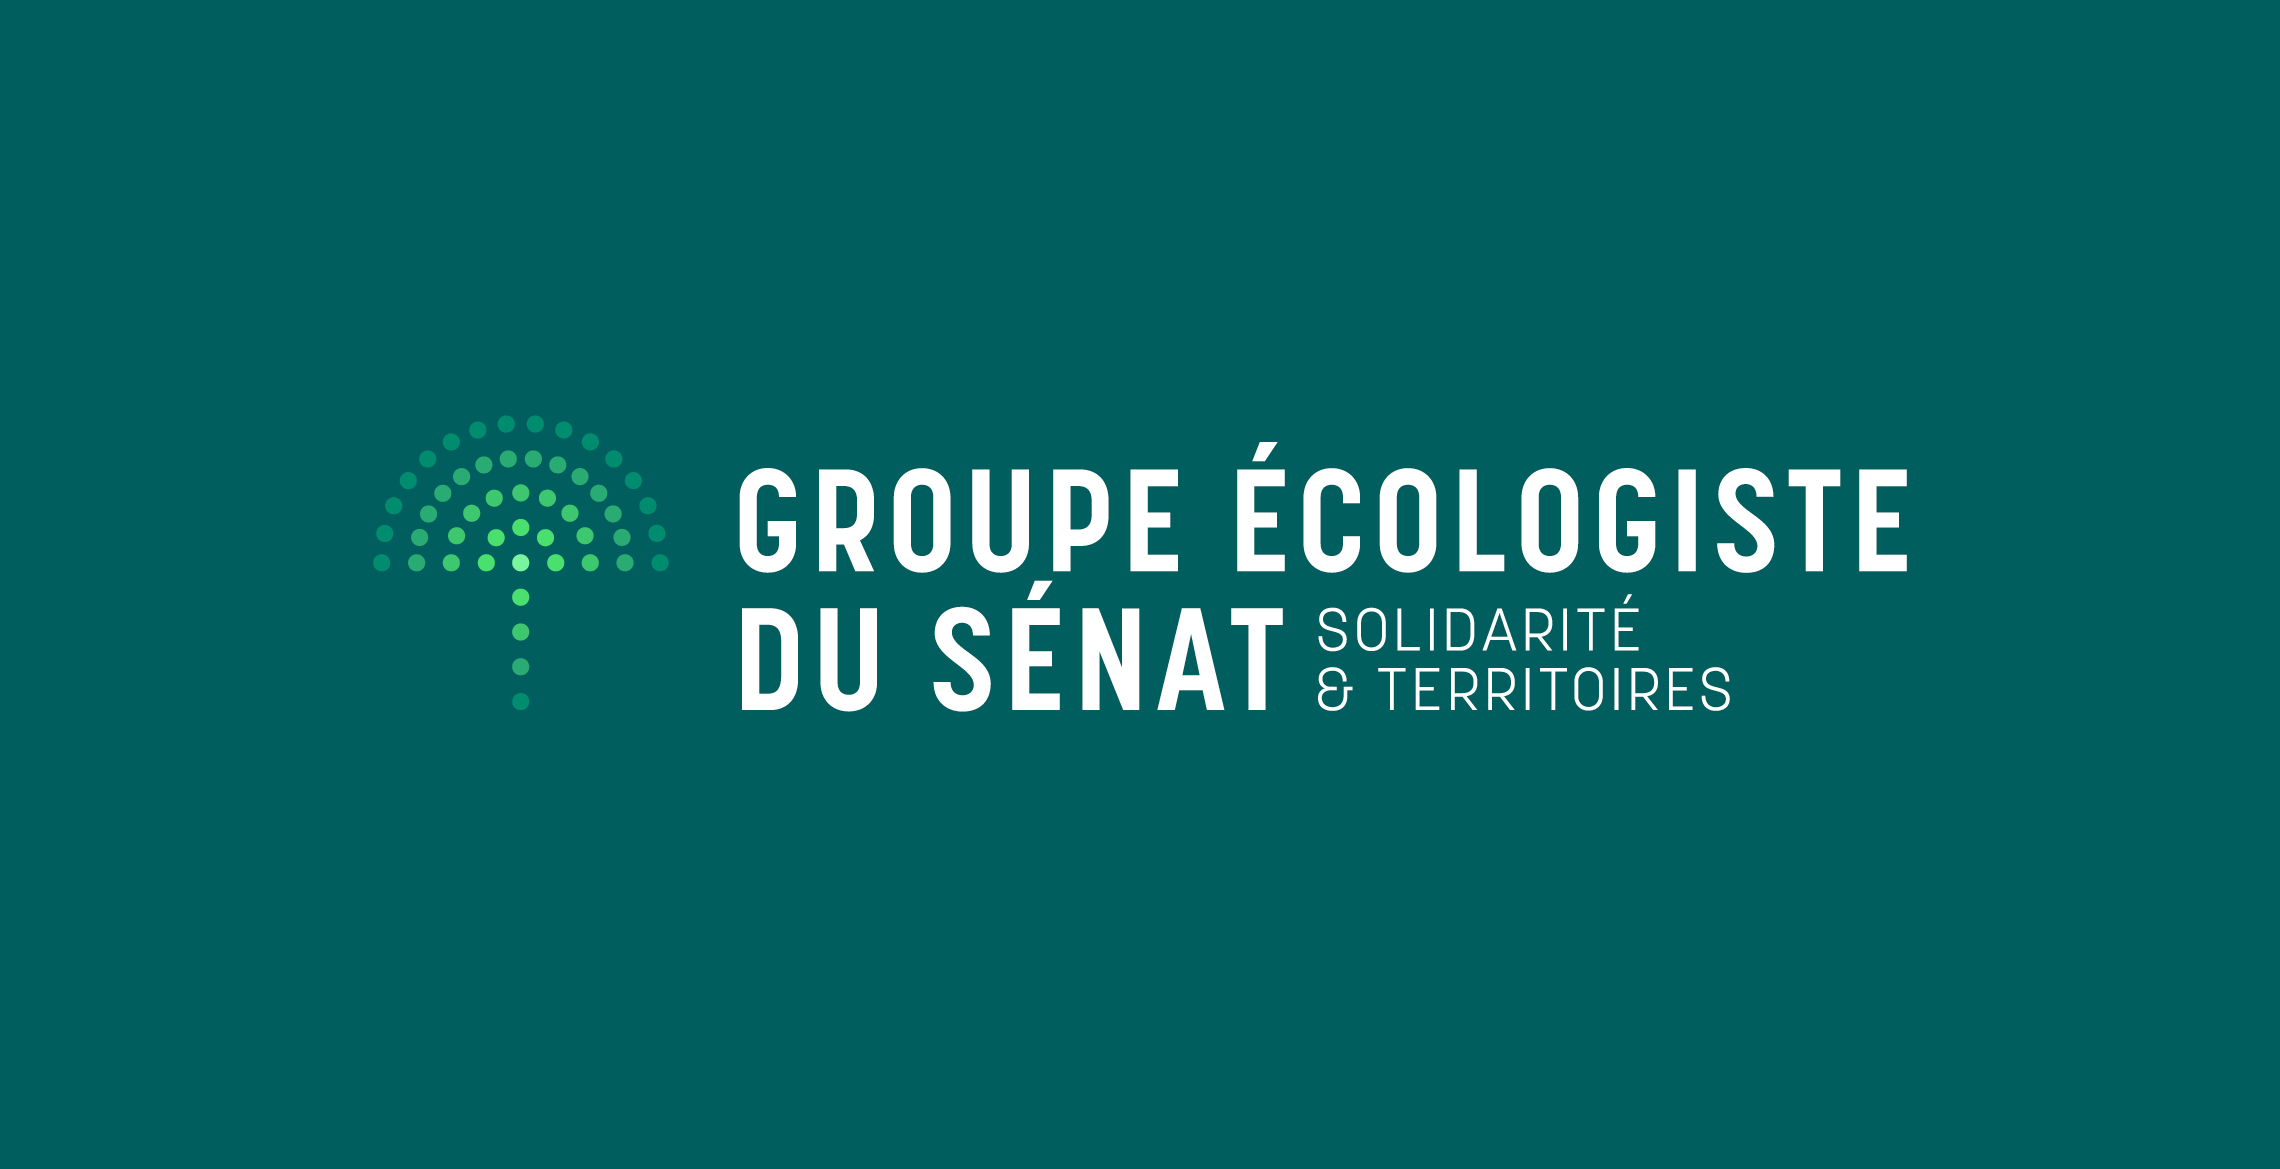 Groupe écologistes du Sénat